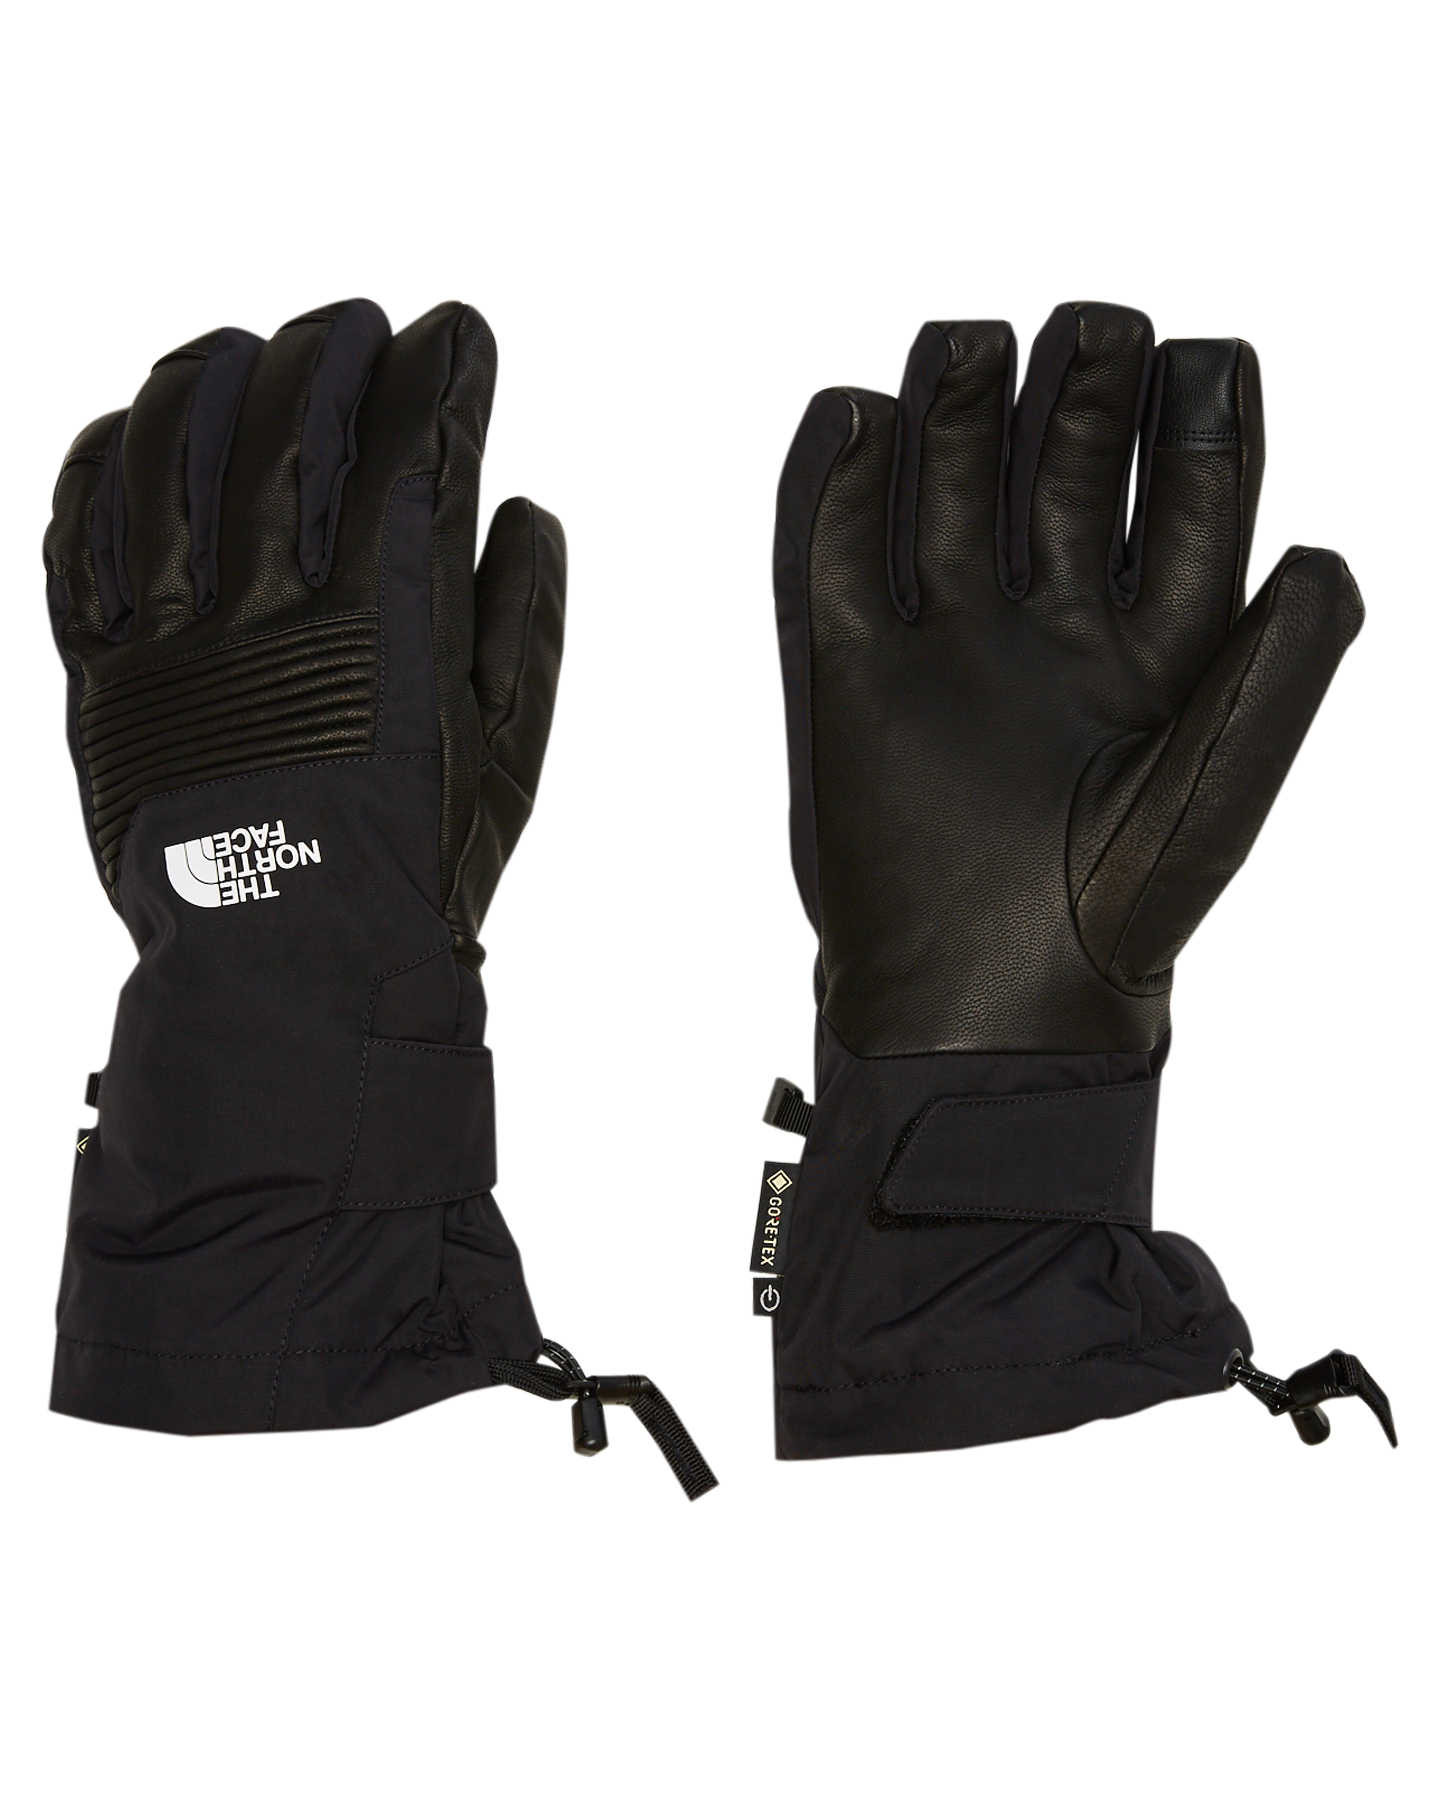 north face powdercloud gtx gloves 